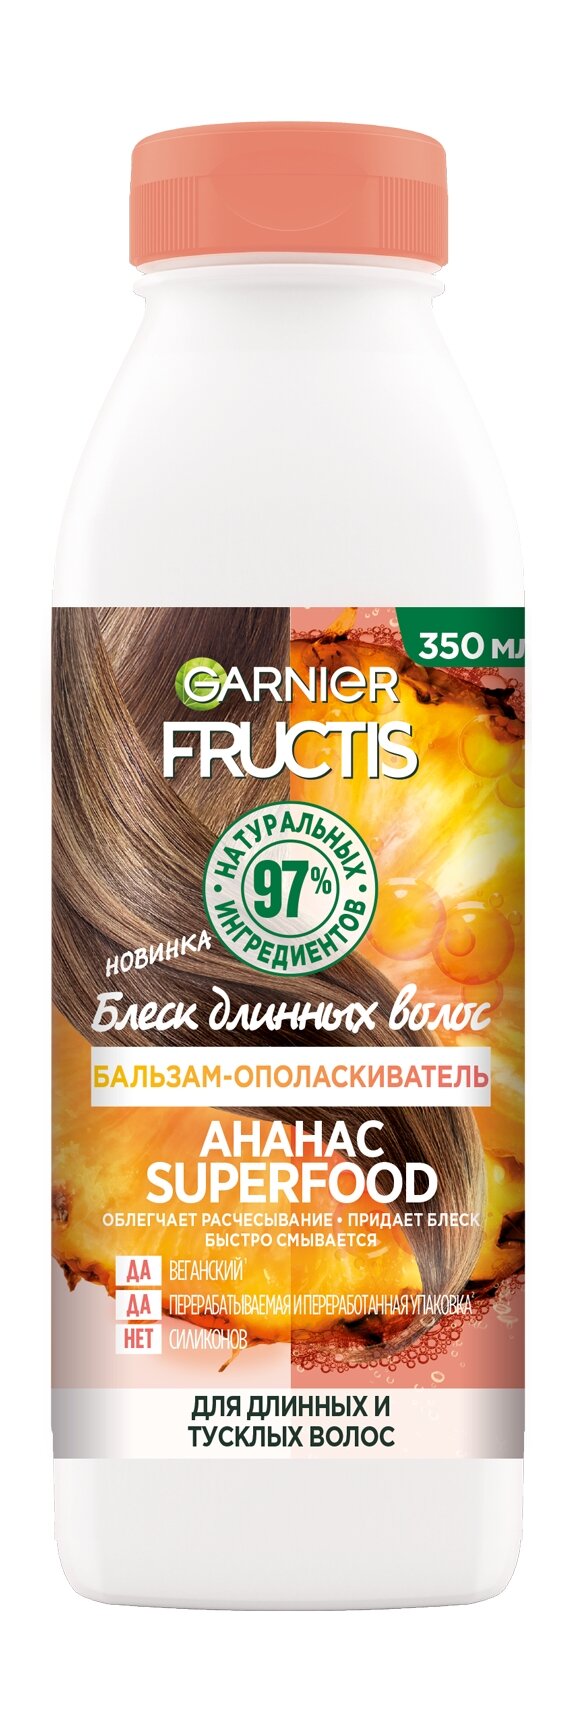 GARNIER Бальзам-ополаскиватель для волос "Ананас Блеск длинных волос" Fructis Superfood, 350 мл